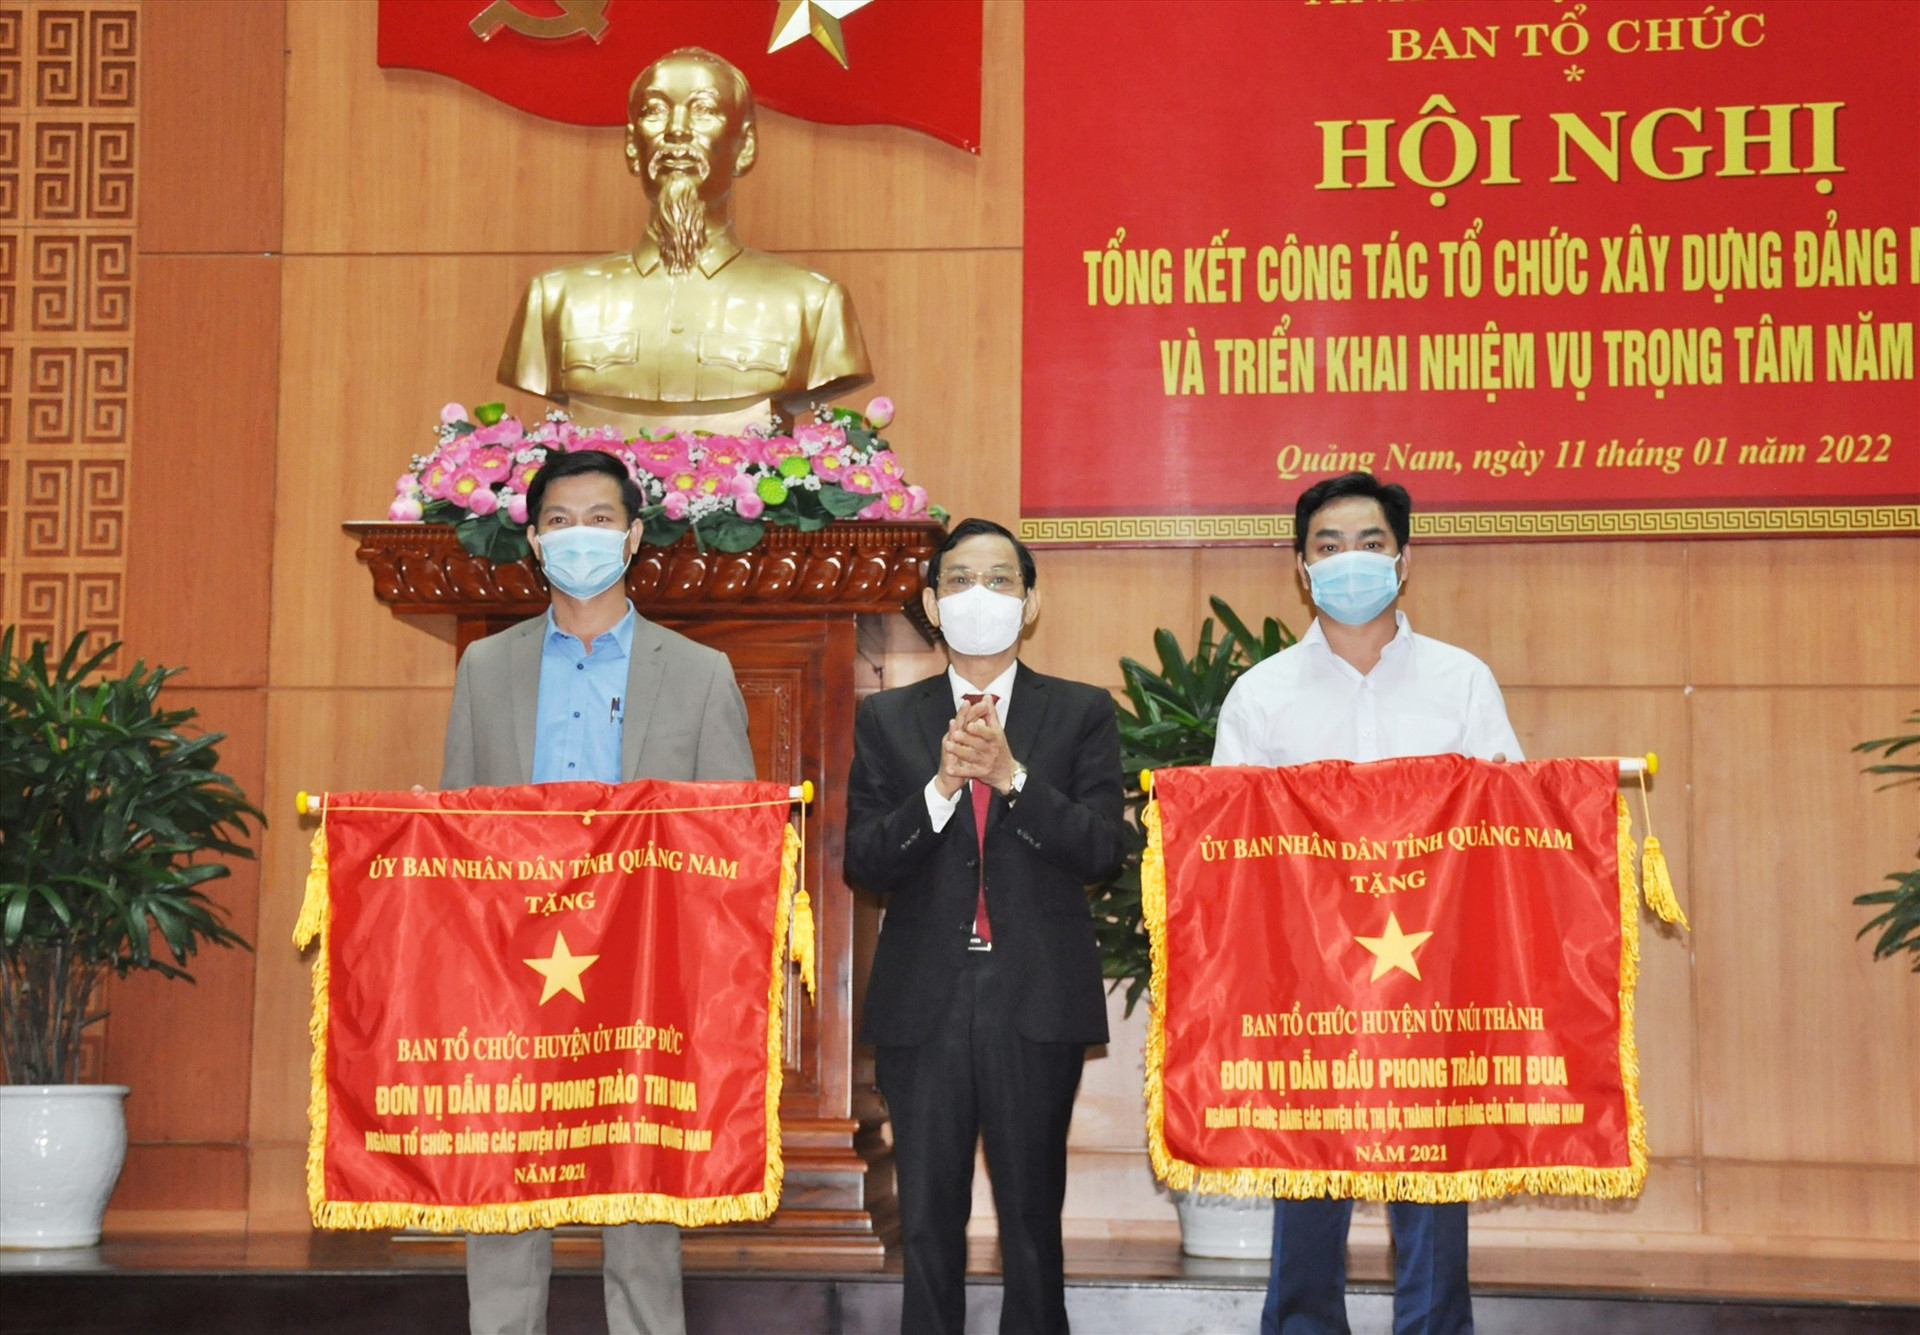 Trưởng ban Tổ chức Tỉnh ủy Nguyễn Chín trao tặng Cờ thi đua xuất sắc năm 2021 cho Ban Tổ chức Huyện ủy Núi Thành và Hiệp Đức. Ảnh: N.Đ